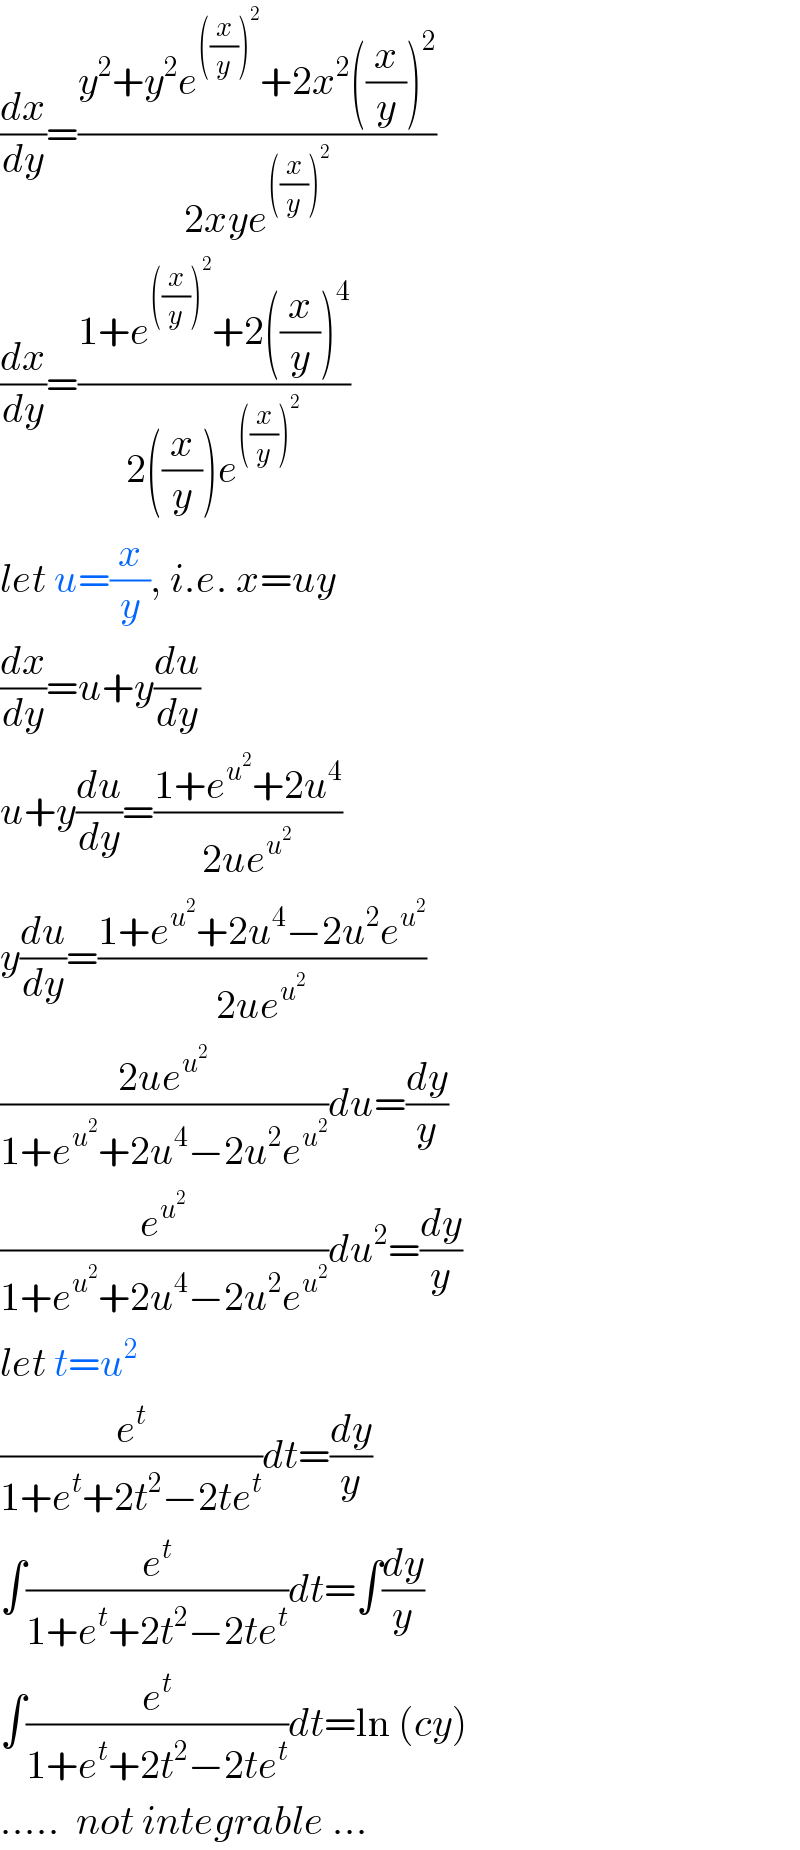 (dx/dy)=((y^2 +y^2 e^(((x/y))^2 ) +2x^2 ((x/y))^2 )/(2xye^(((x/y))^2 ) ))  (dx/dy)=((1+e^(((x/y))^2 ) +2((x/y))^4 )/(2((x/y))e^(((x/y))^2 ) ))  let u=(x/y), i.e. x=uy  (dx/dy)=u+y(du/dy)  u+y(du/dy)=((1+e^u^2  +2u^4 )/(2ue^u^2  ))  y(du/dy)=((1+e^u^2  +2u^4 −2u^2 e^u^2  )/(2ue^u^2  ))  ((2ue^u^2  )/(1+e^u^2  +2u^4 −2u^2 e^u^2  ))du=(dy/y)  (e^u^2  /(1+e^u^2  +2u^4 −2u^2 e^u^2  ))du^2 =(dy/y)  let t=u^2   (e^t /(1+e^t +2t^2 −2te^t ))dt=(dy/y)  ∫(e^t /(1+e^t +2t^2 −2te^t ))dt=∫(dy/y)  ∫(e^t /(1+e^t +2t^2 −2te^t ))dt=ln (cy)  .....  not integrable ...  